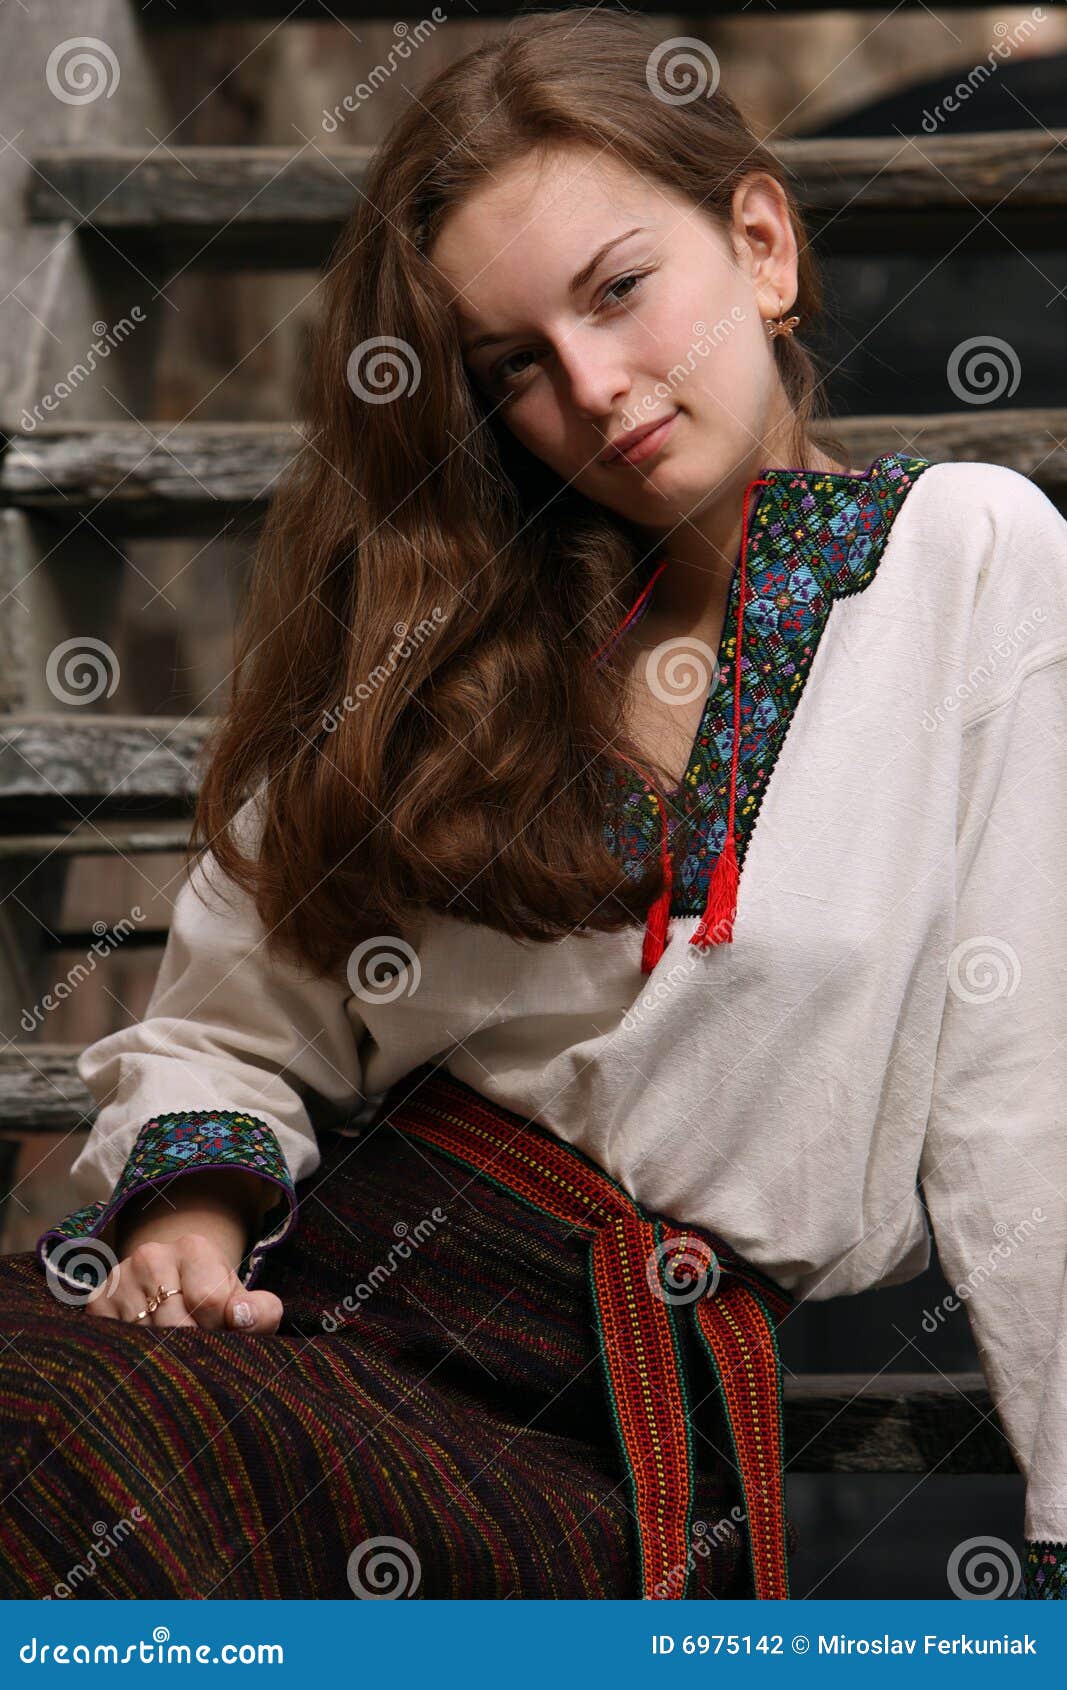 ukrainian-young-girl-6975142.jpg